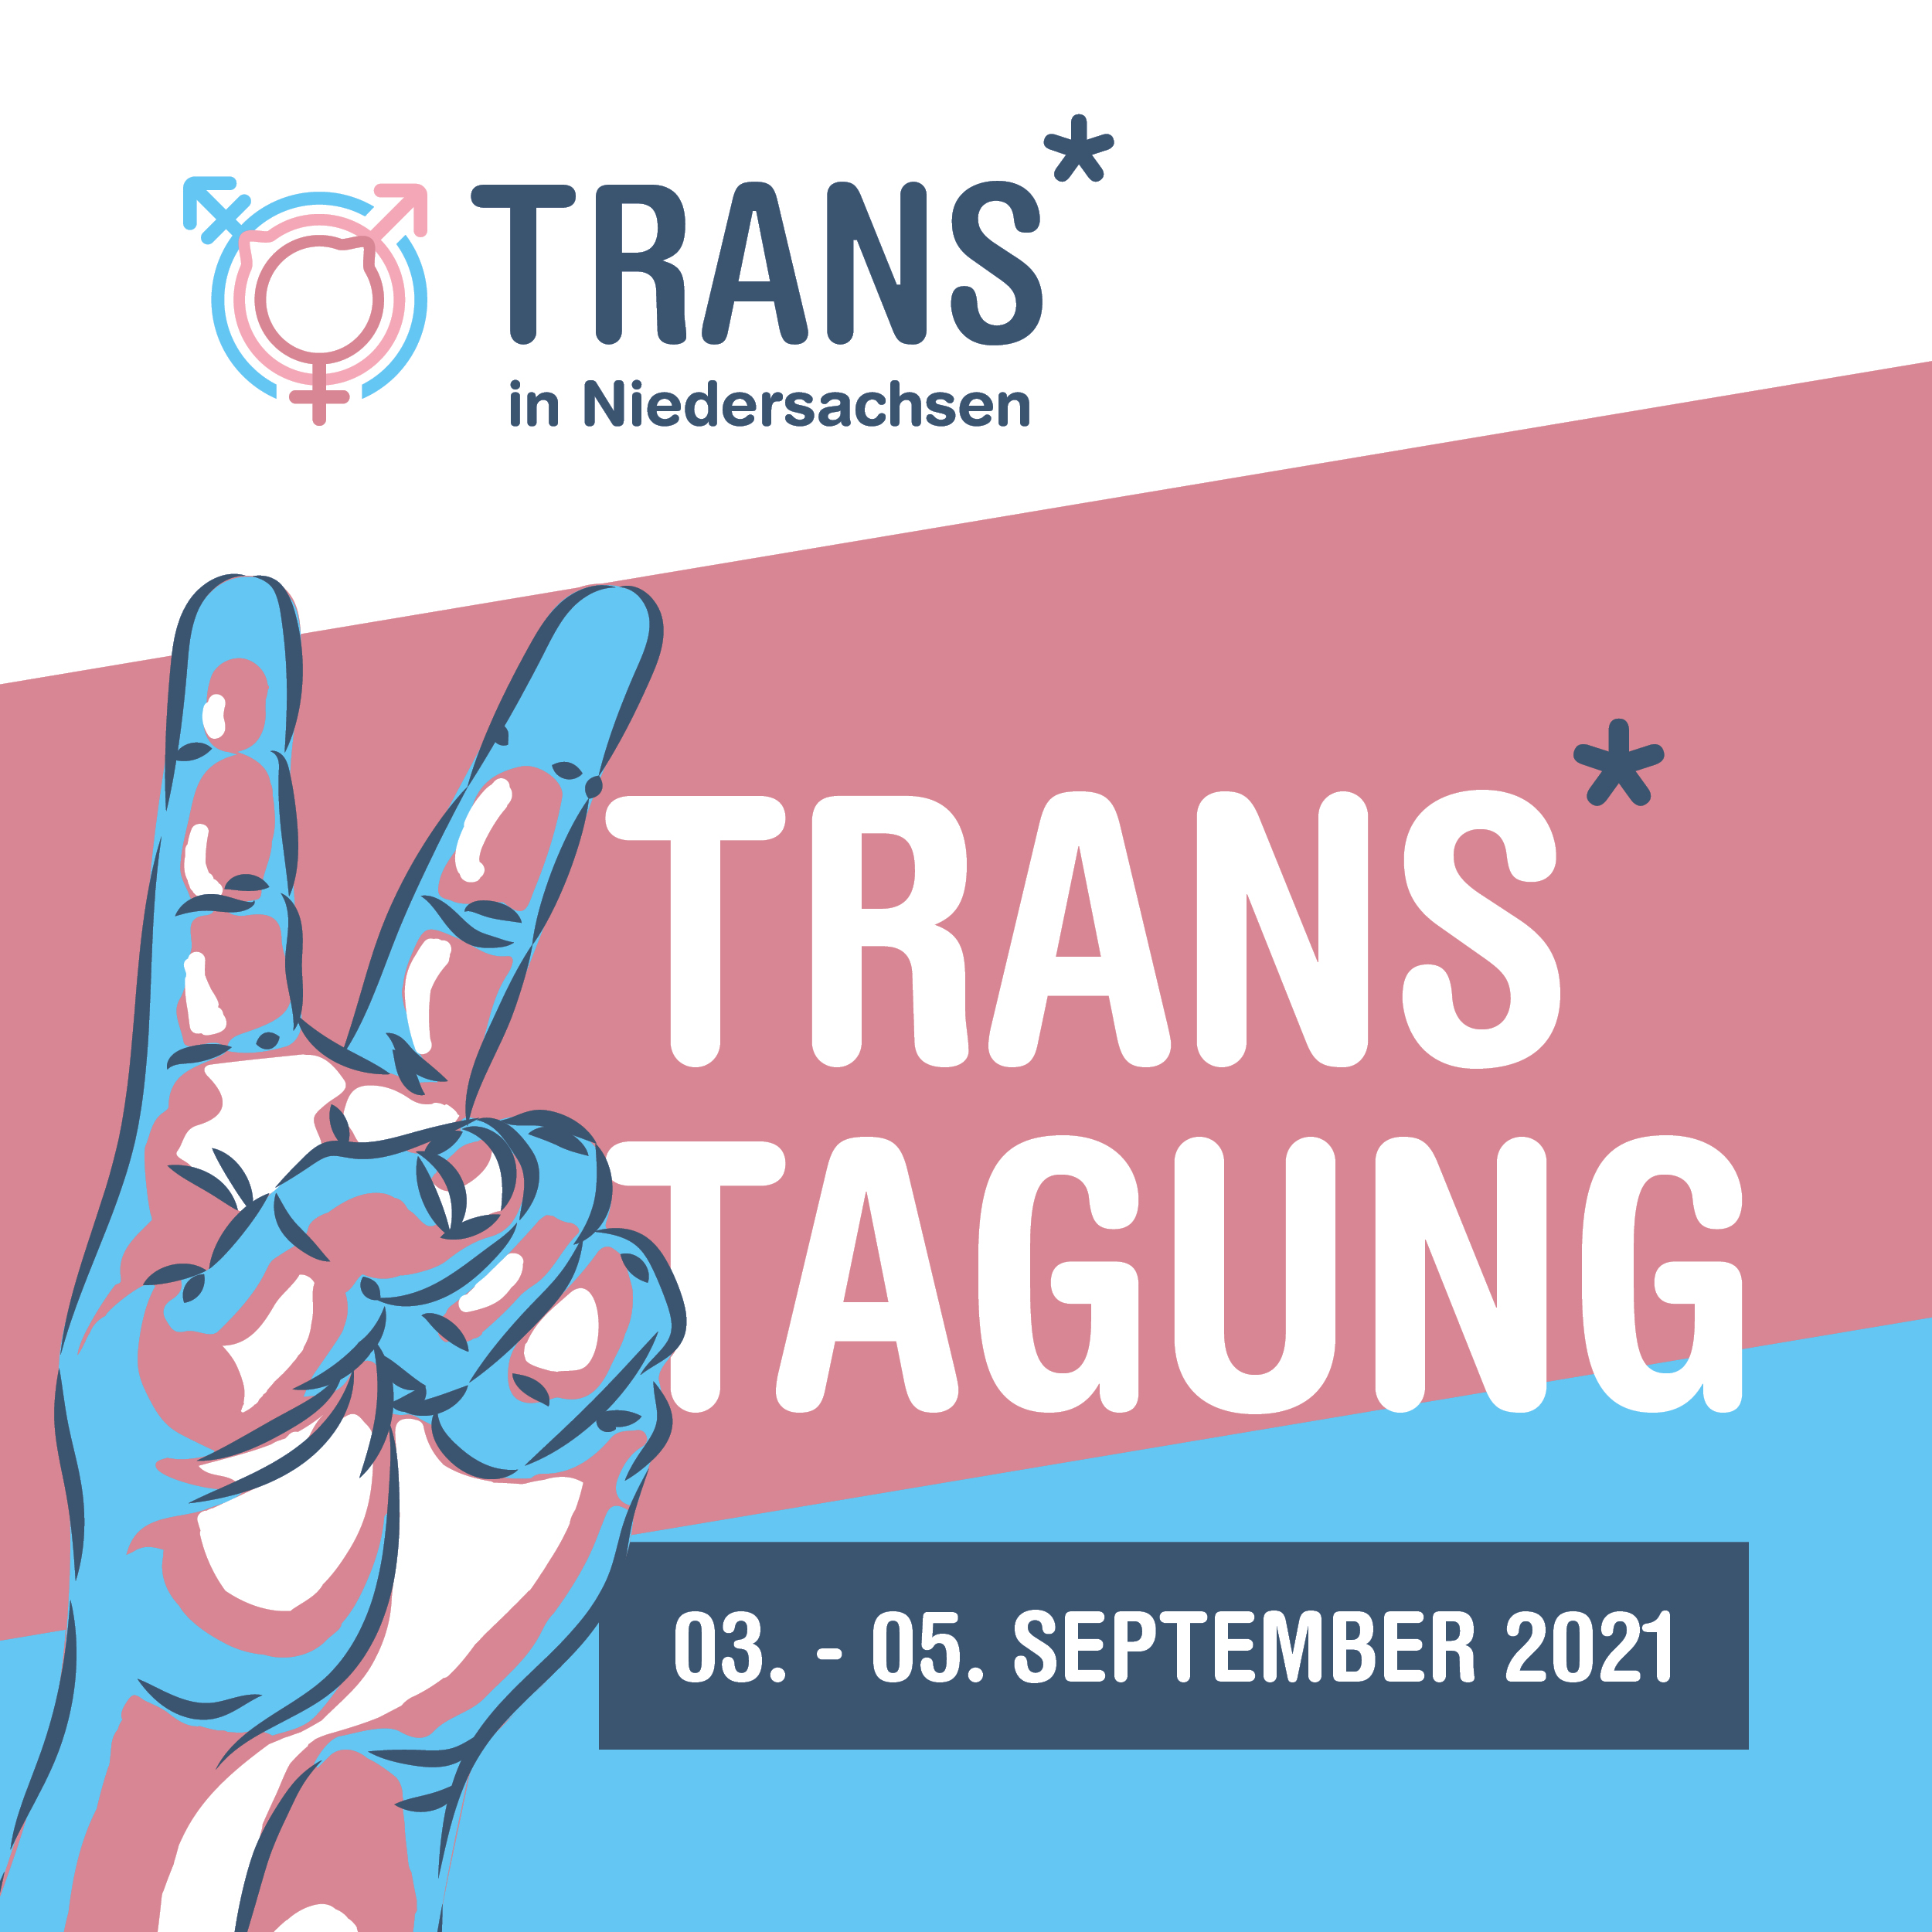 dritte Trans*Tagung Niedersachsen